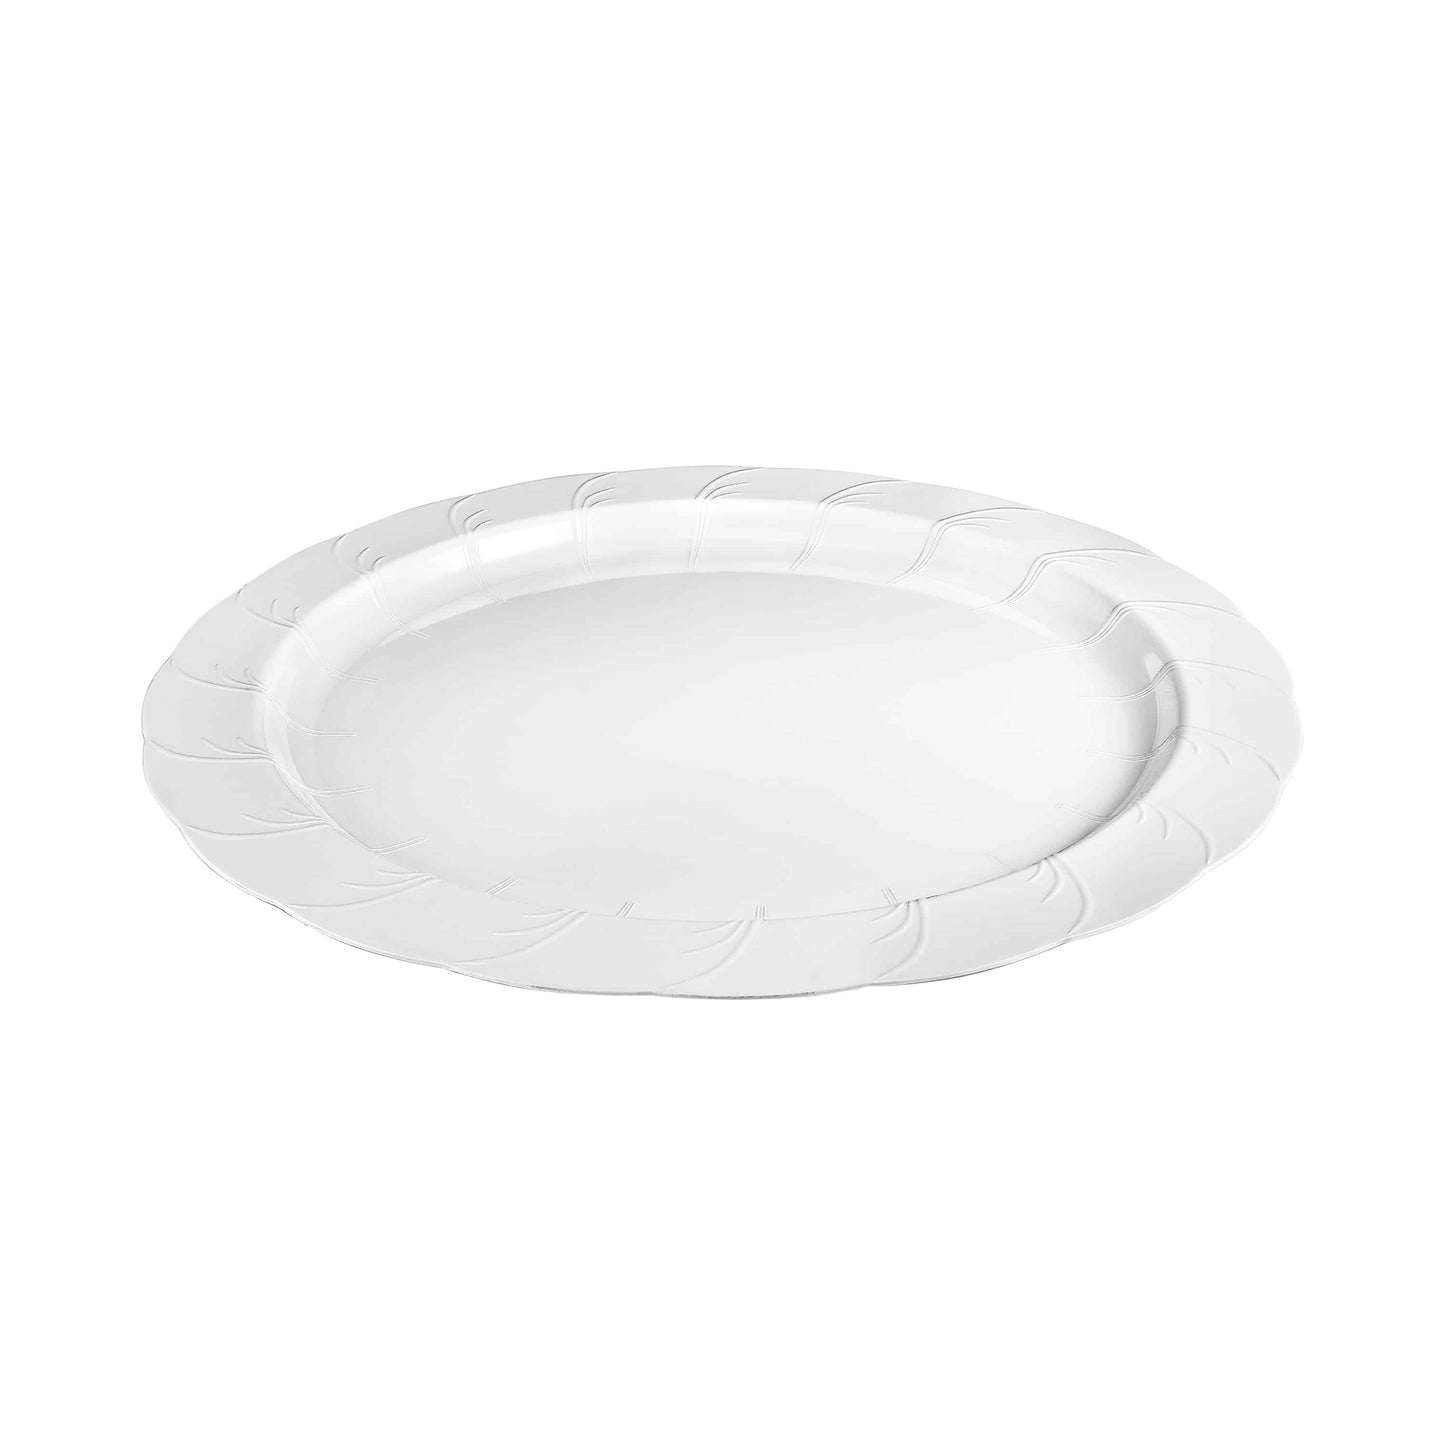 Elegance Premium Plastic Round Dinner Plate